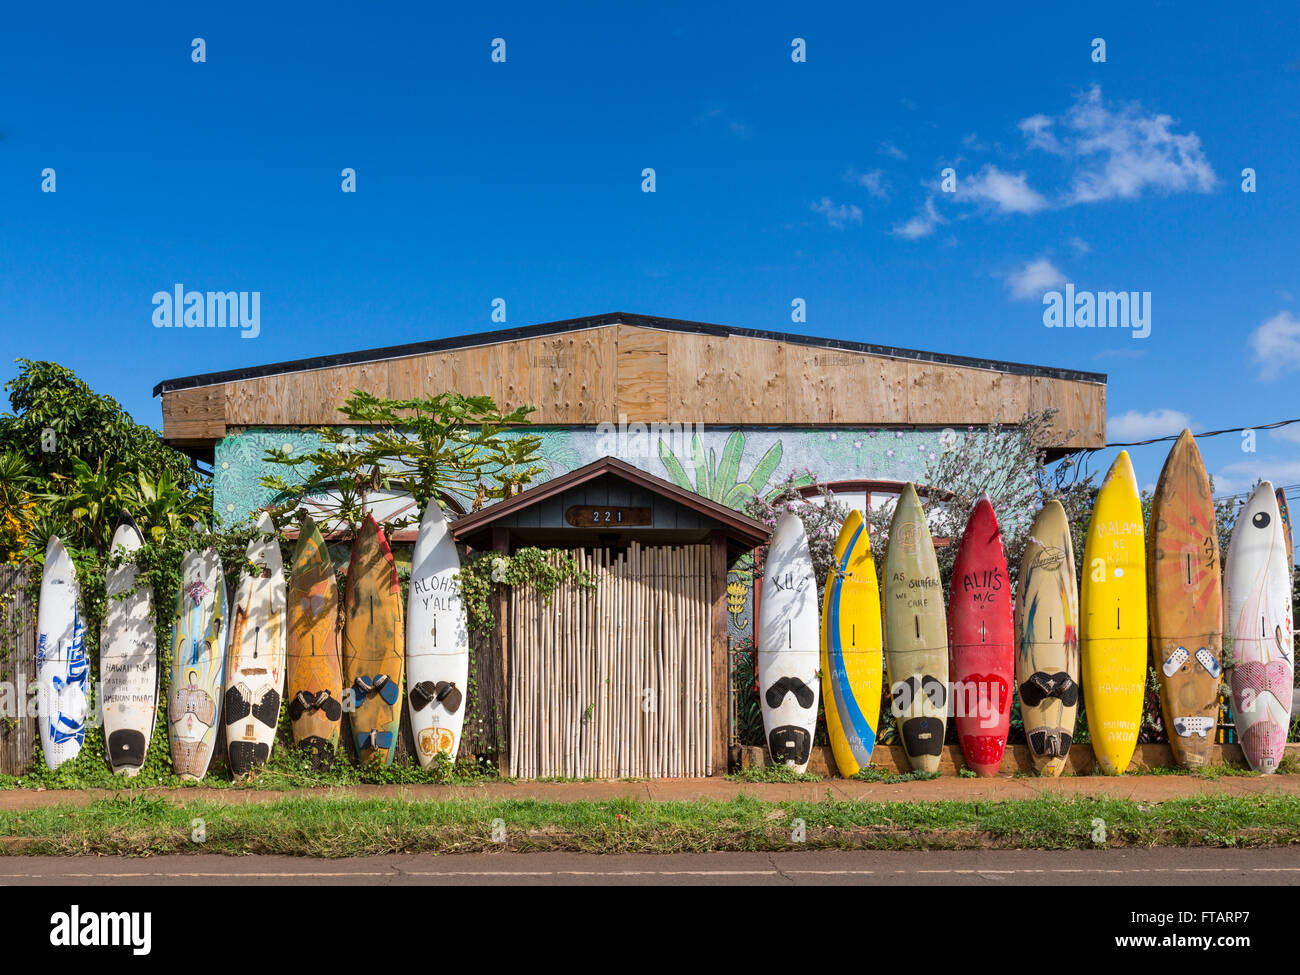 Une clôture faite de planches à voile : unique, fun, voyage local attractions touristiques à Paia, Maui, Hawaii Banque D'Images